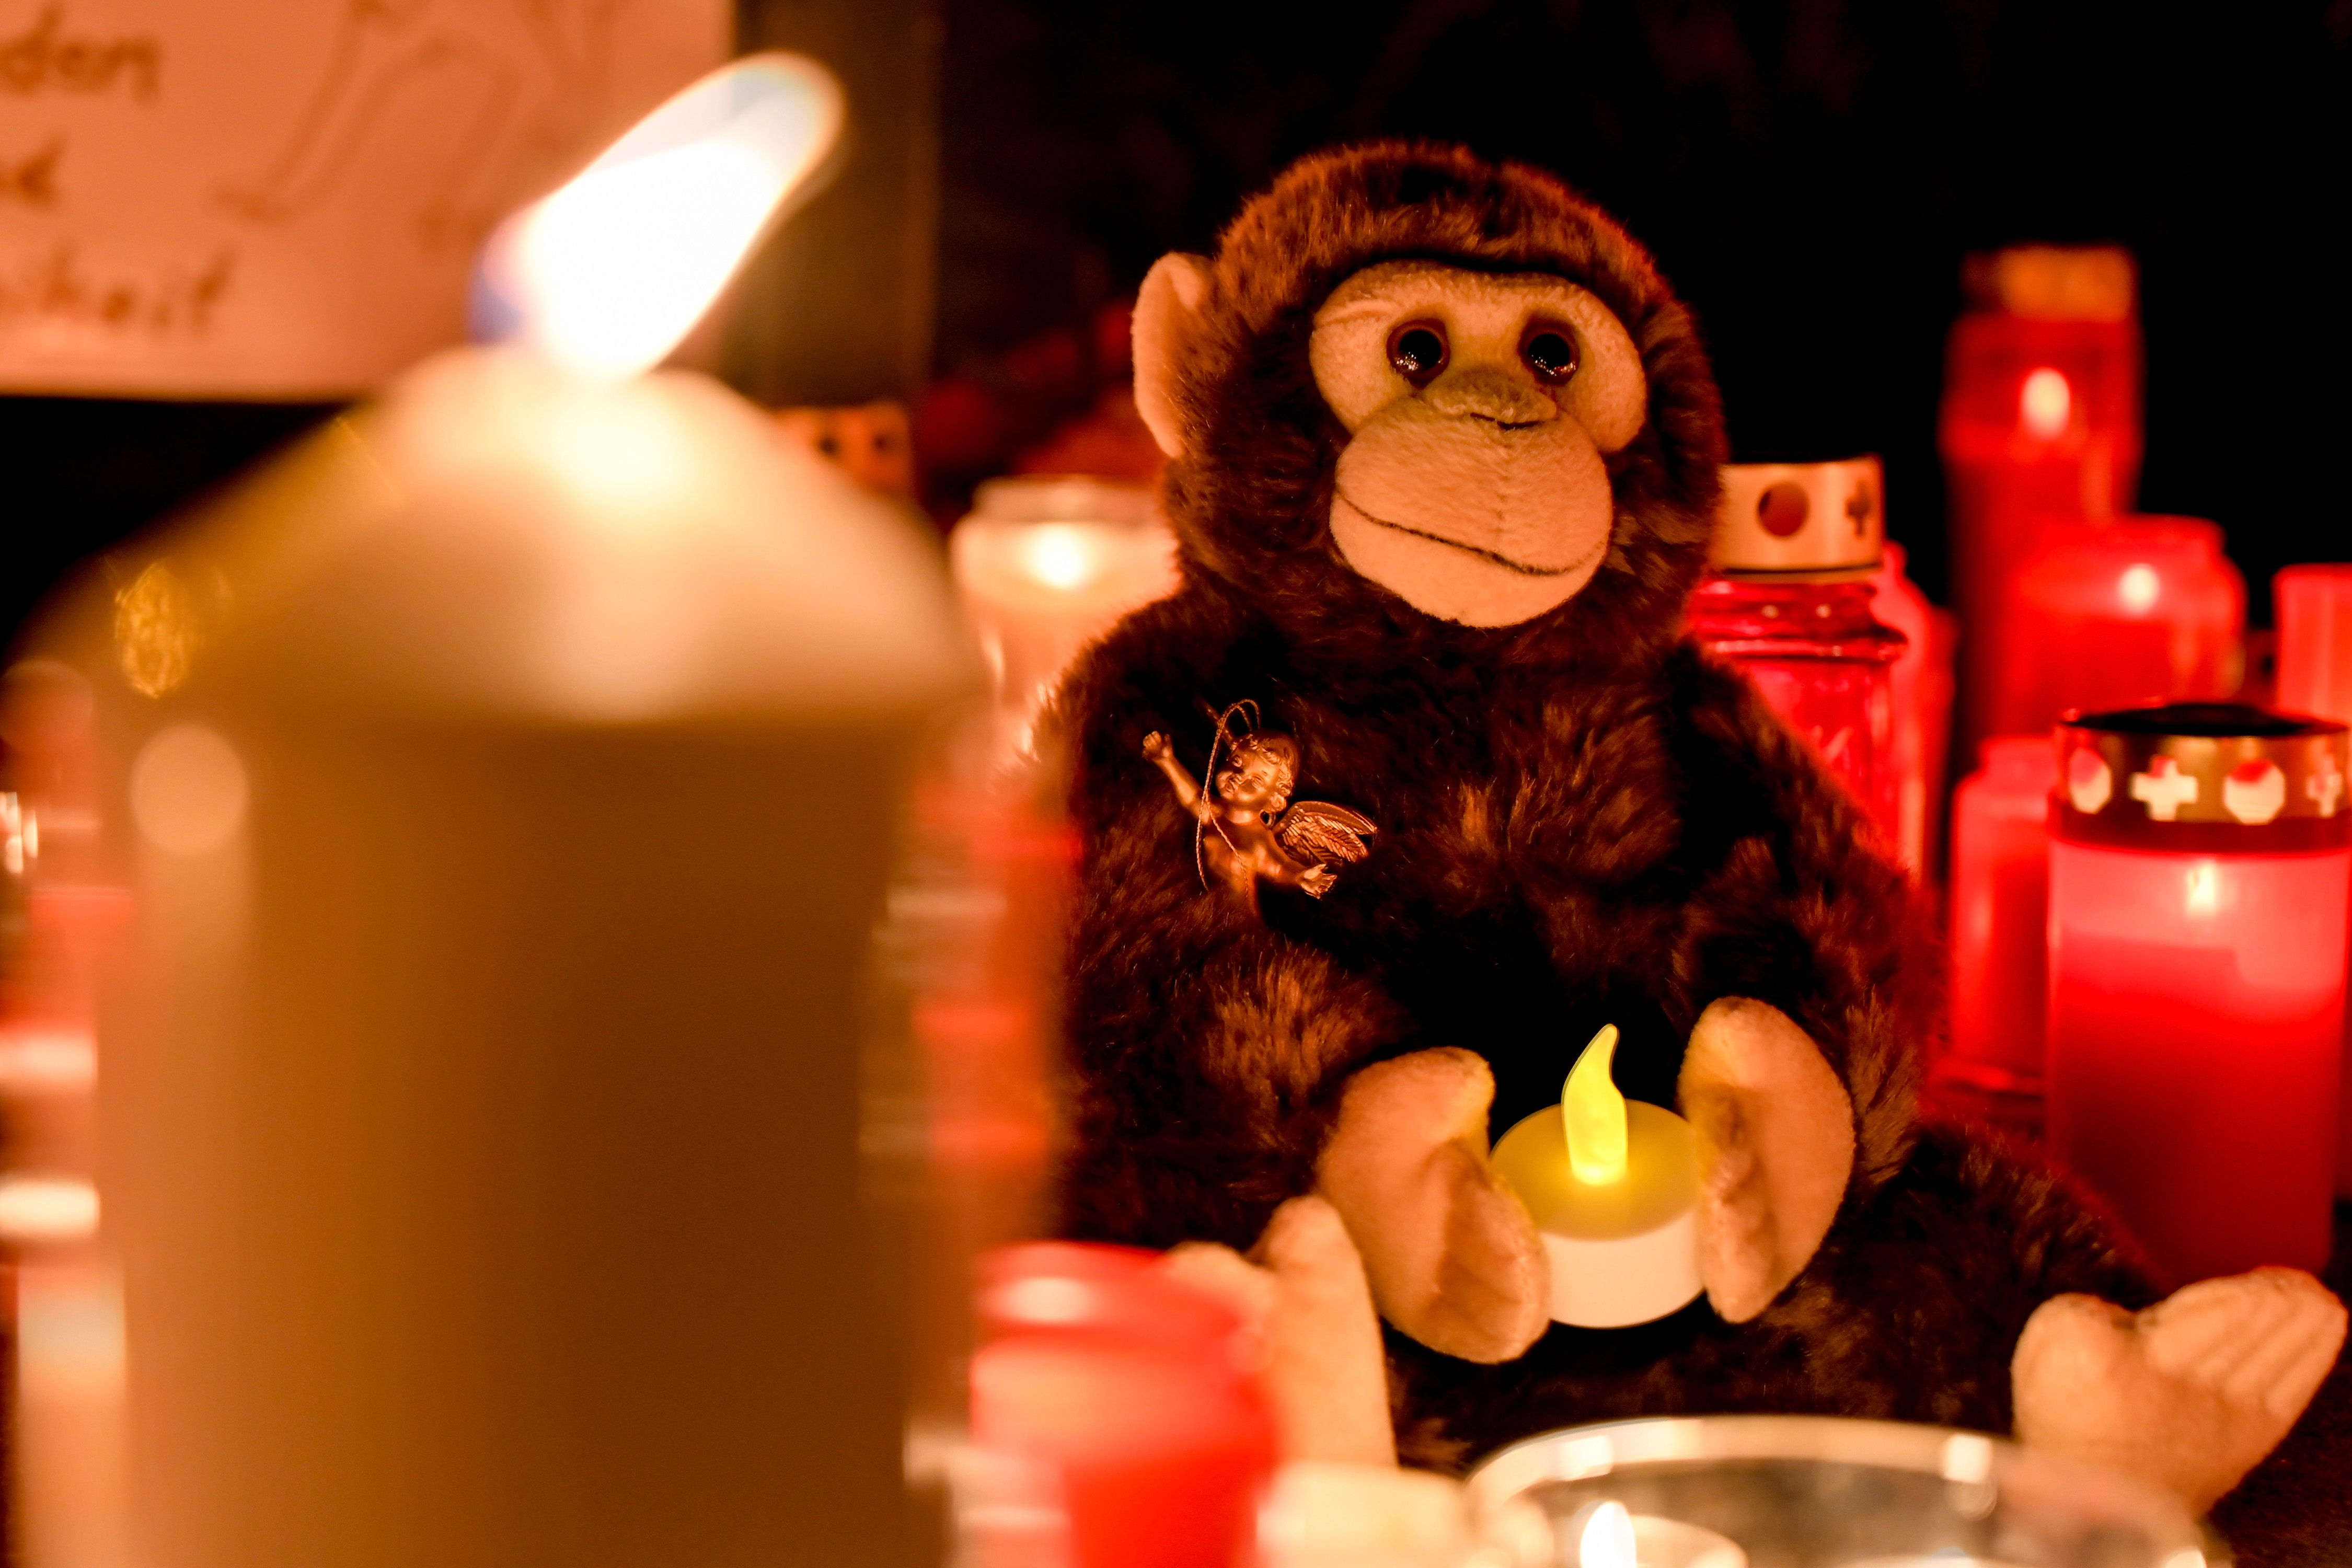 La comunidad de Krefeld se entristeció por la muerte de los simios a causa de la pirotecnia. (Foto Prensa Libre: Hemeroteca PL)

